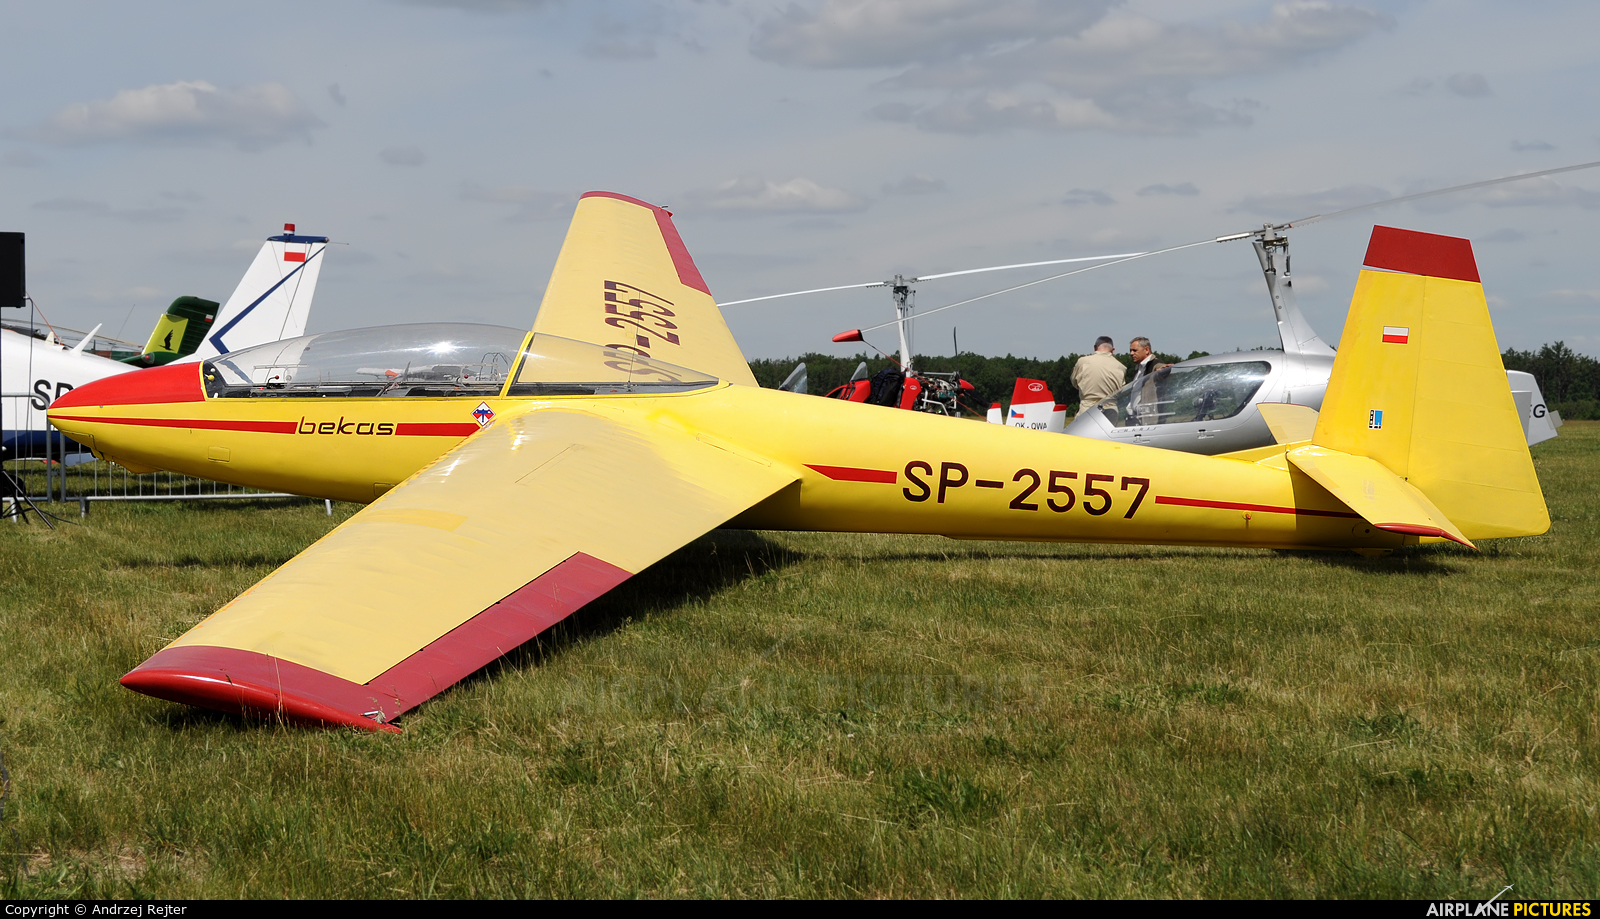 Aeroklub Gliwicki SP-2557 aircraft at Ostrów Wielkopolski - Michałków